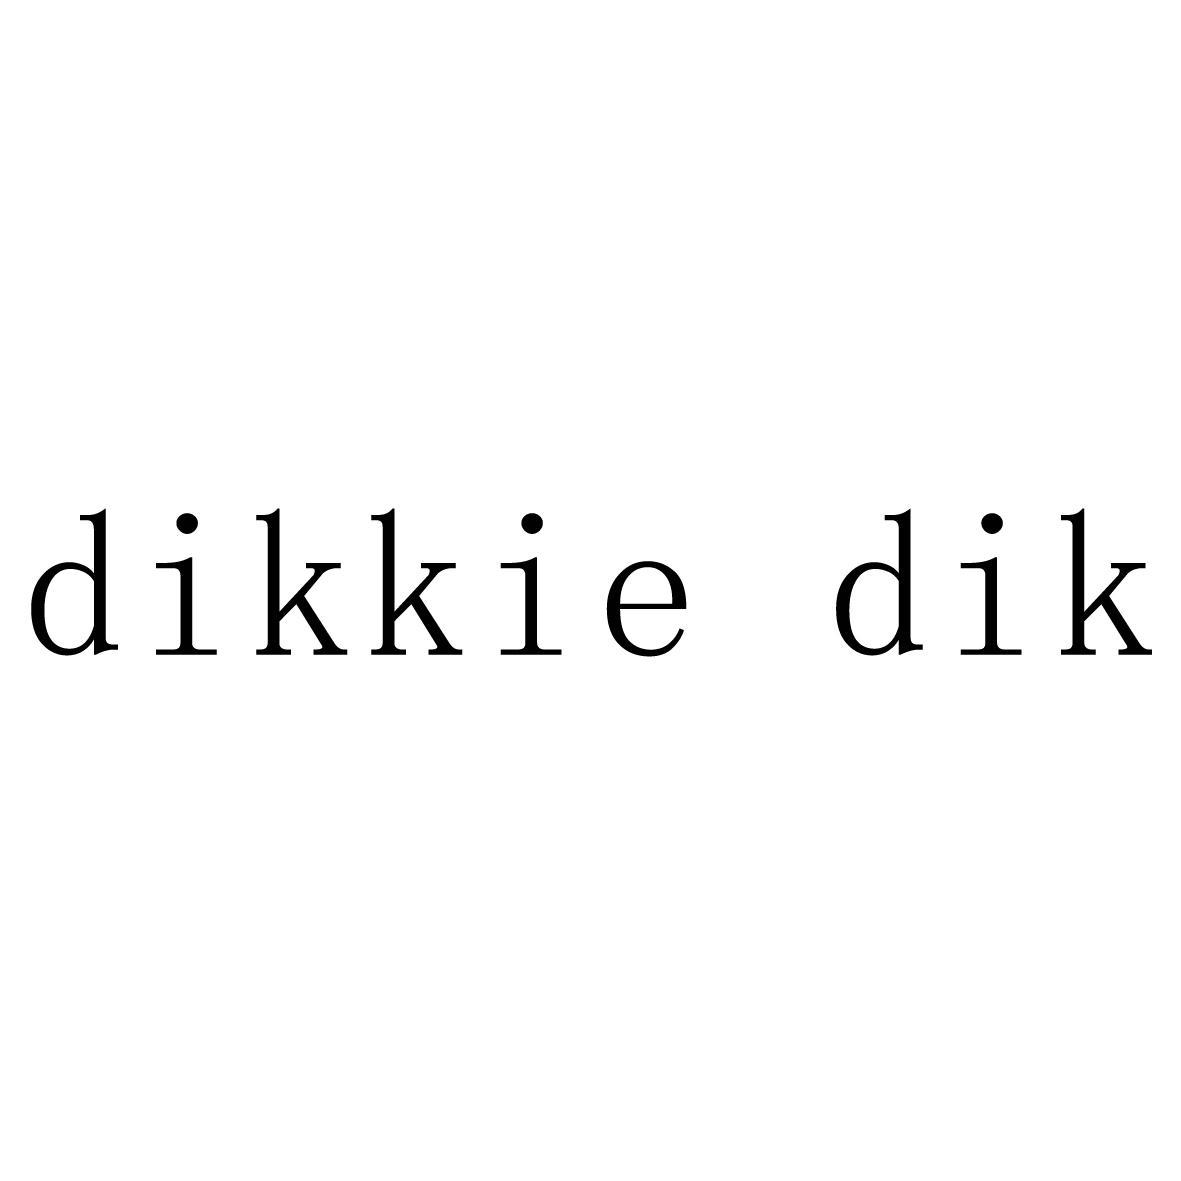 DIKKIE DIK